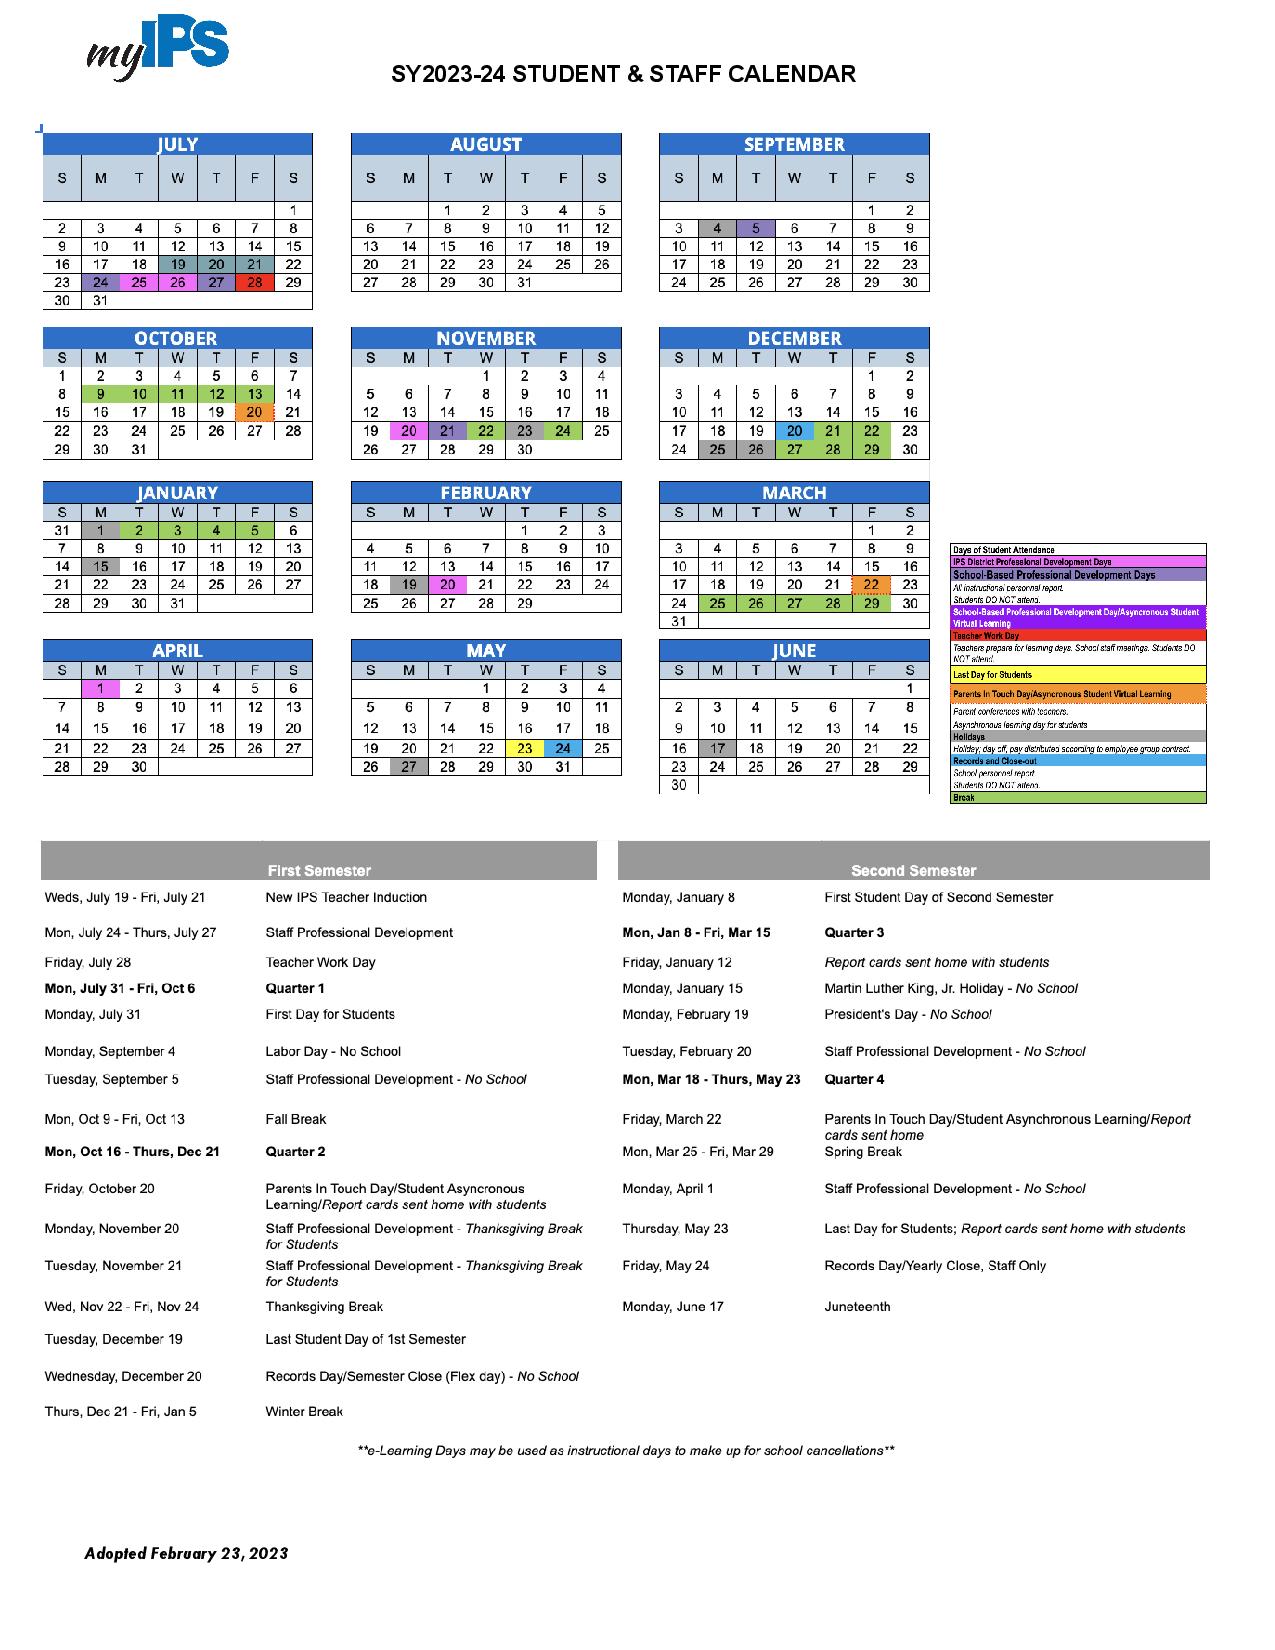 Indianapolis Public Schools Calendar Holidays 2023 2024 PDF